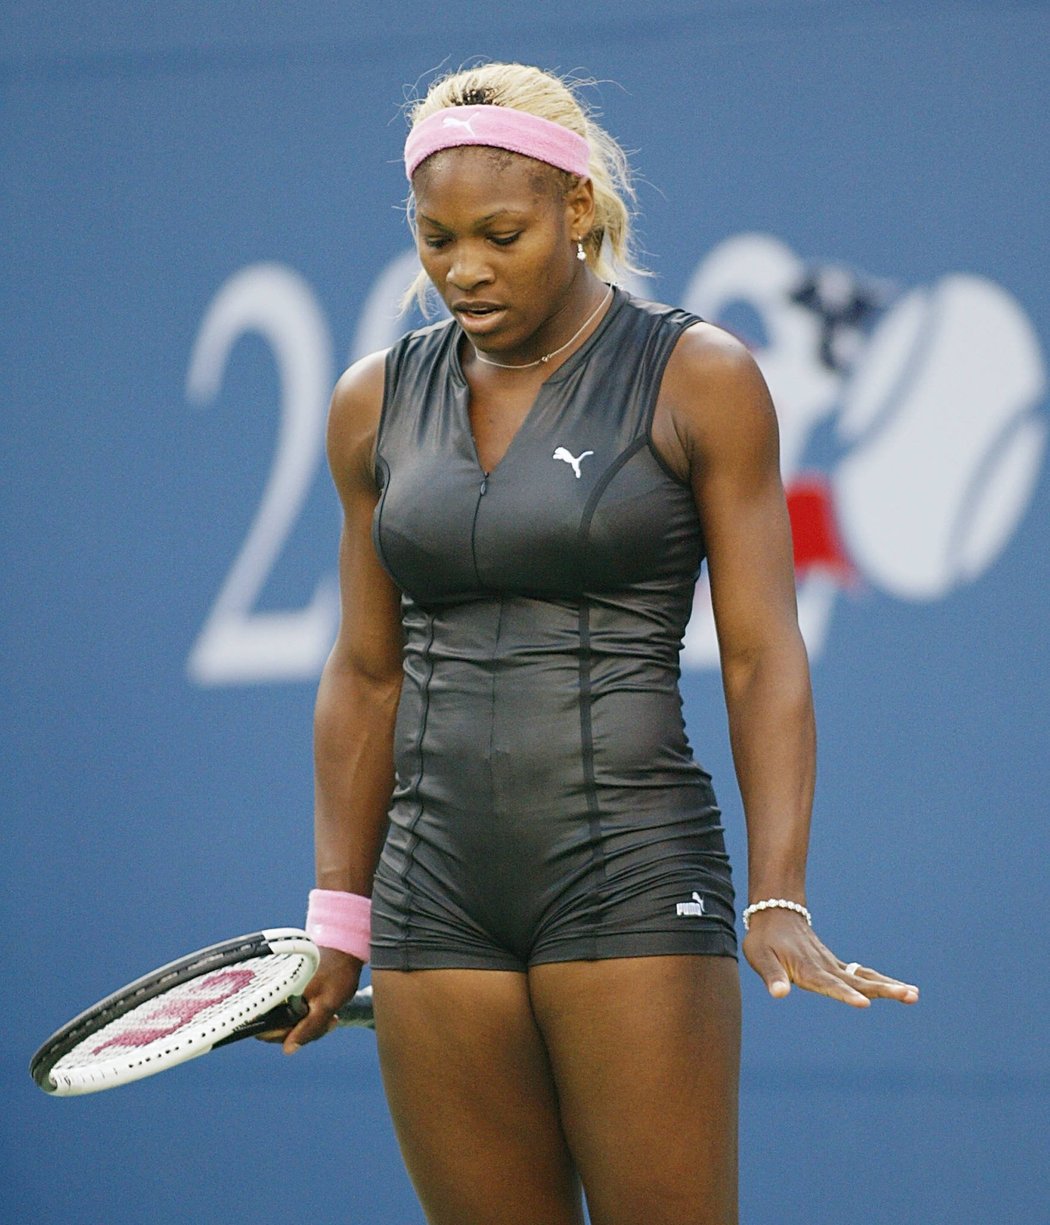 V přilnavém overalu hrála Serena Williamsová už před 16 lety. Tehdy ji ještě oblékala Puma. US Open tehdy vyhrála.